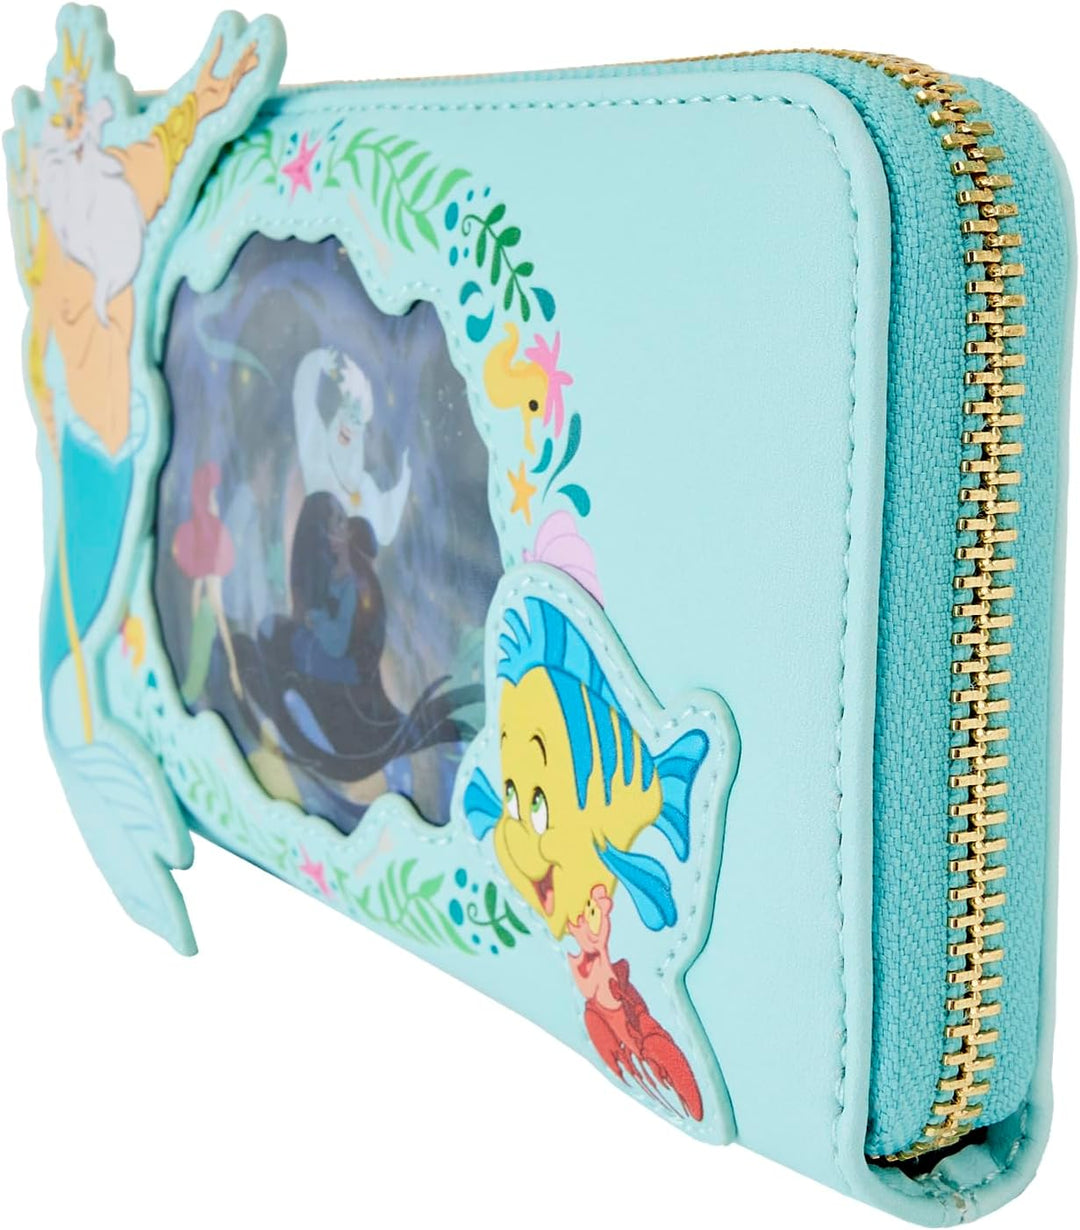 Die kleine Meerjungfrau Ariel Princess Linsenförmiges Portemonnaie mit umlaufendem Reißverschluss, Blaugrün, Einheitsgröße